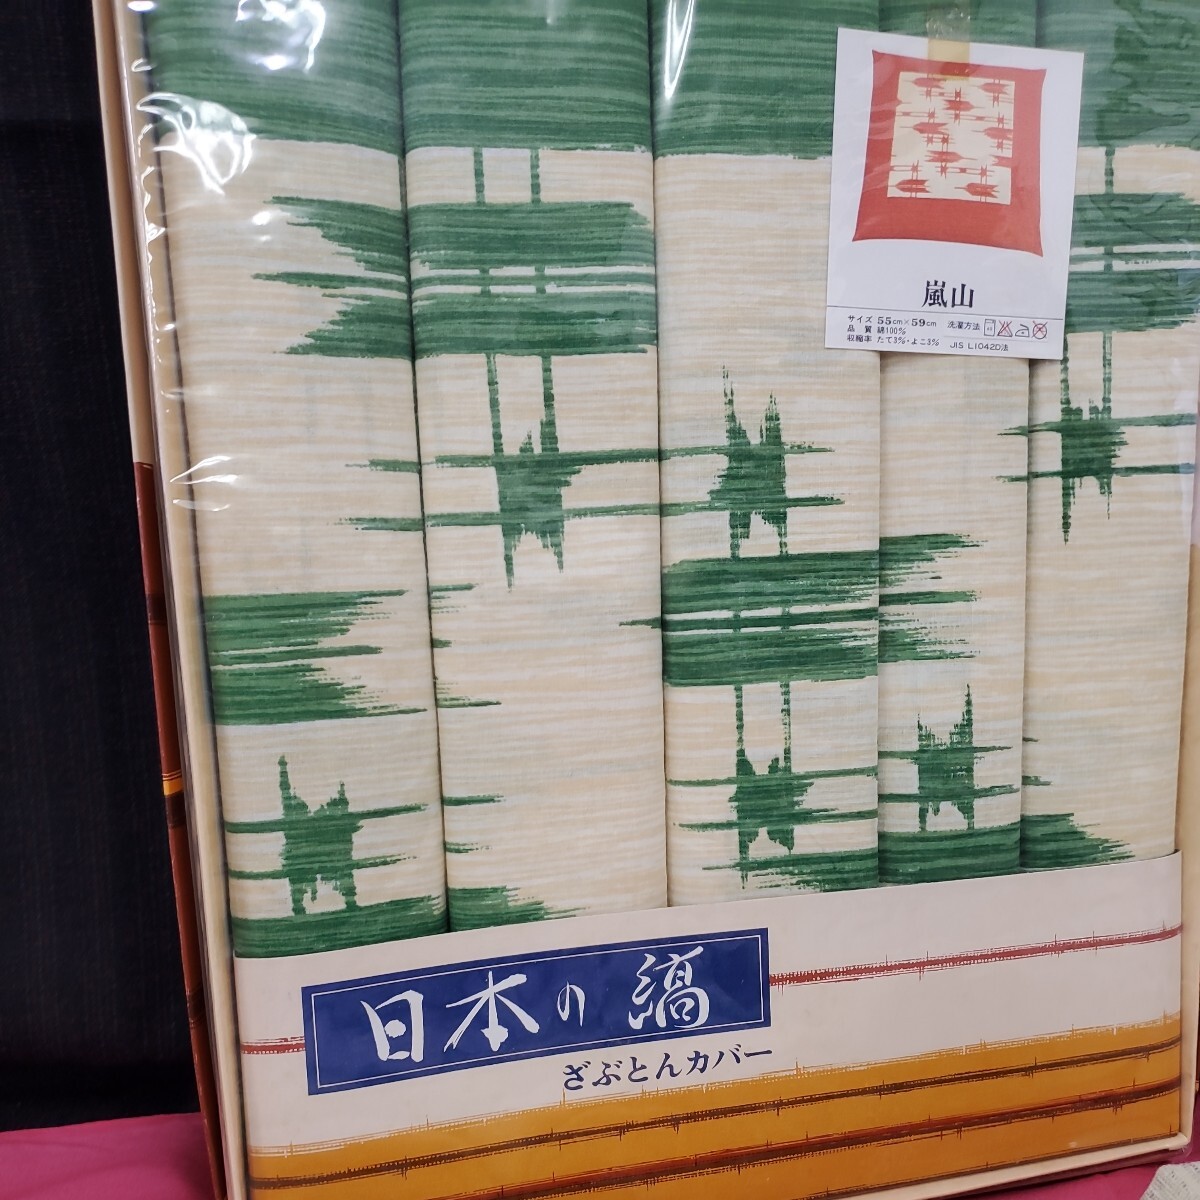 * не использовался хранение товар чехол на подушку для сидения продажа комплектом 55cm×59cmrofte- Kyoto гроза гора .... покрытие 4 сезон ...156-91